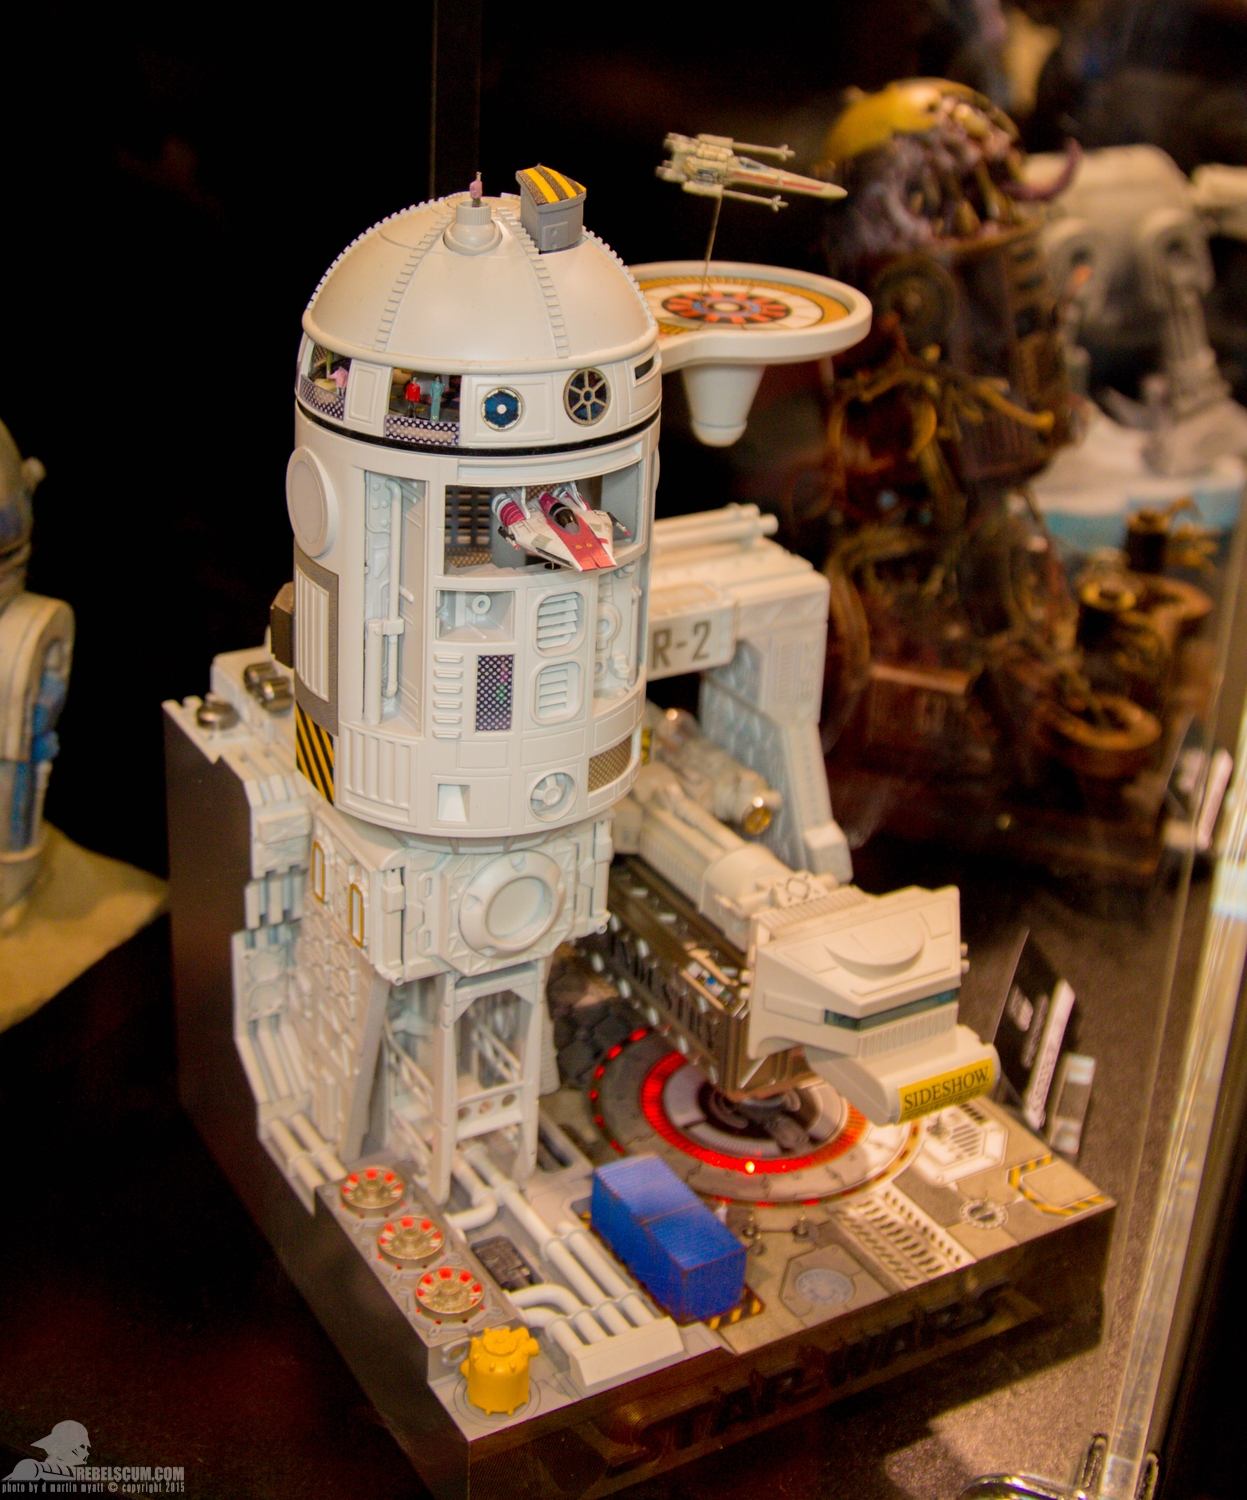 Star-Wars-Celebration-Anaheim-2015-Sideshow-R2-Me2-Exhibit-023.jpg